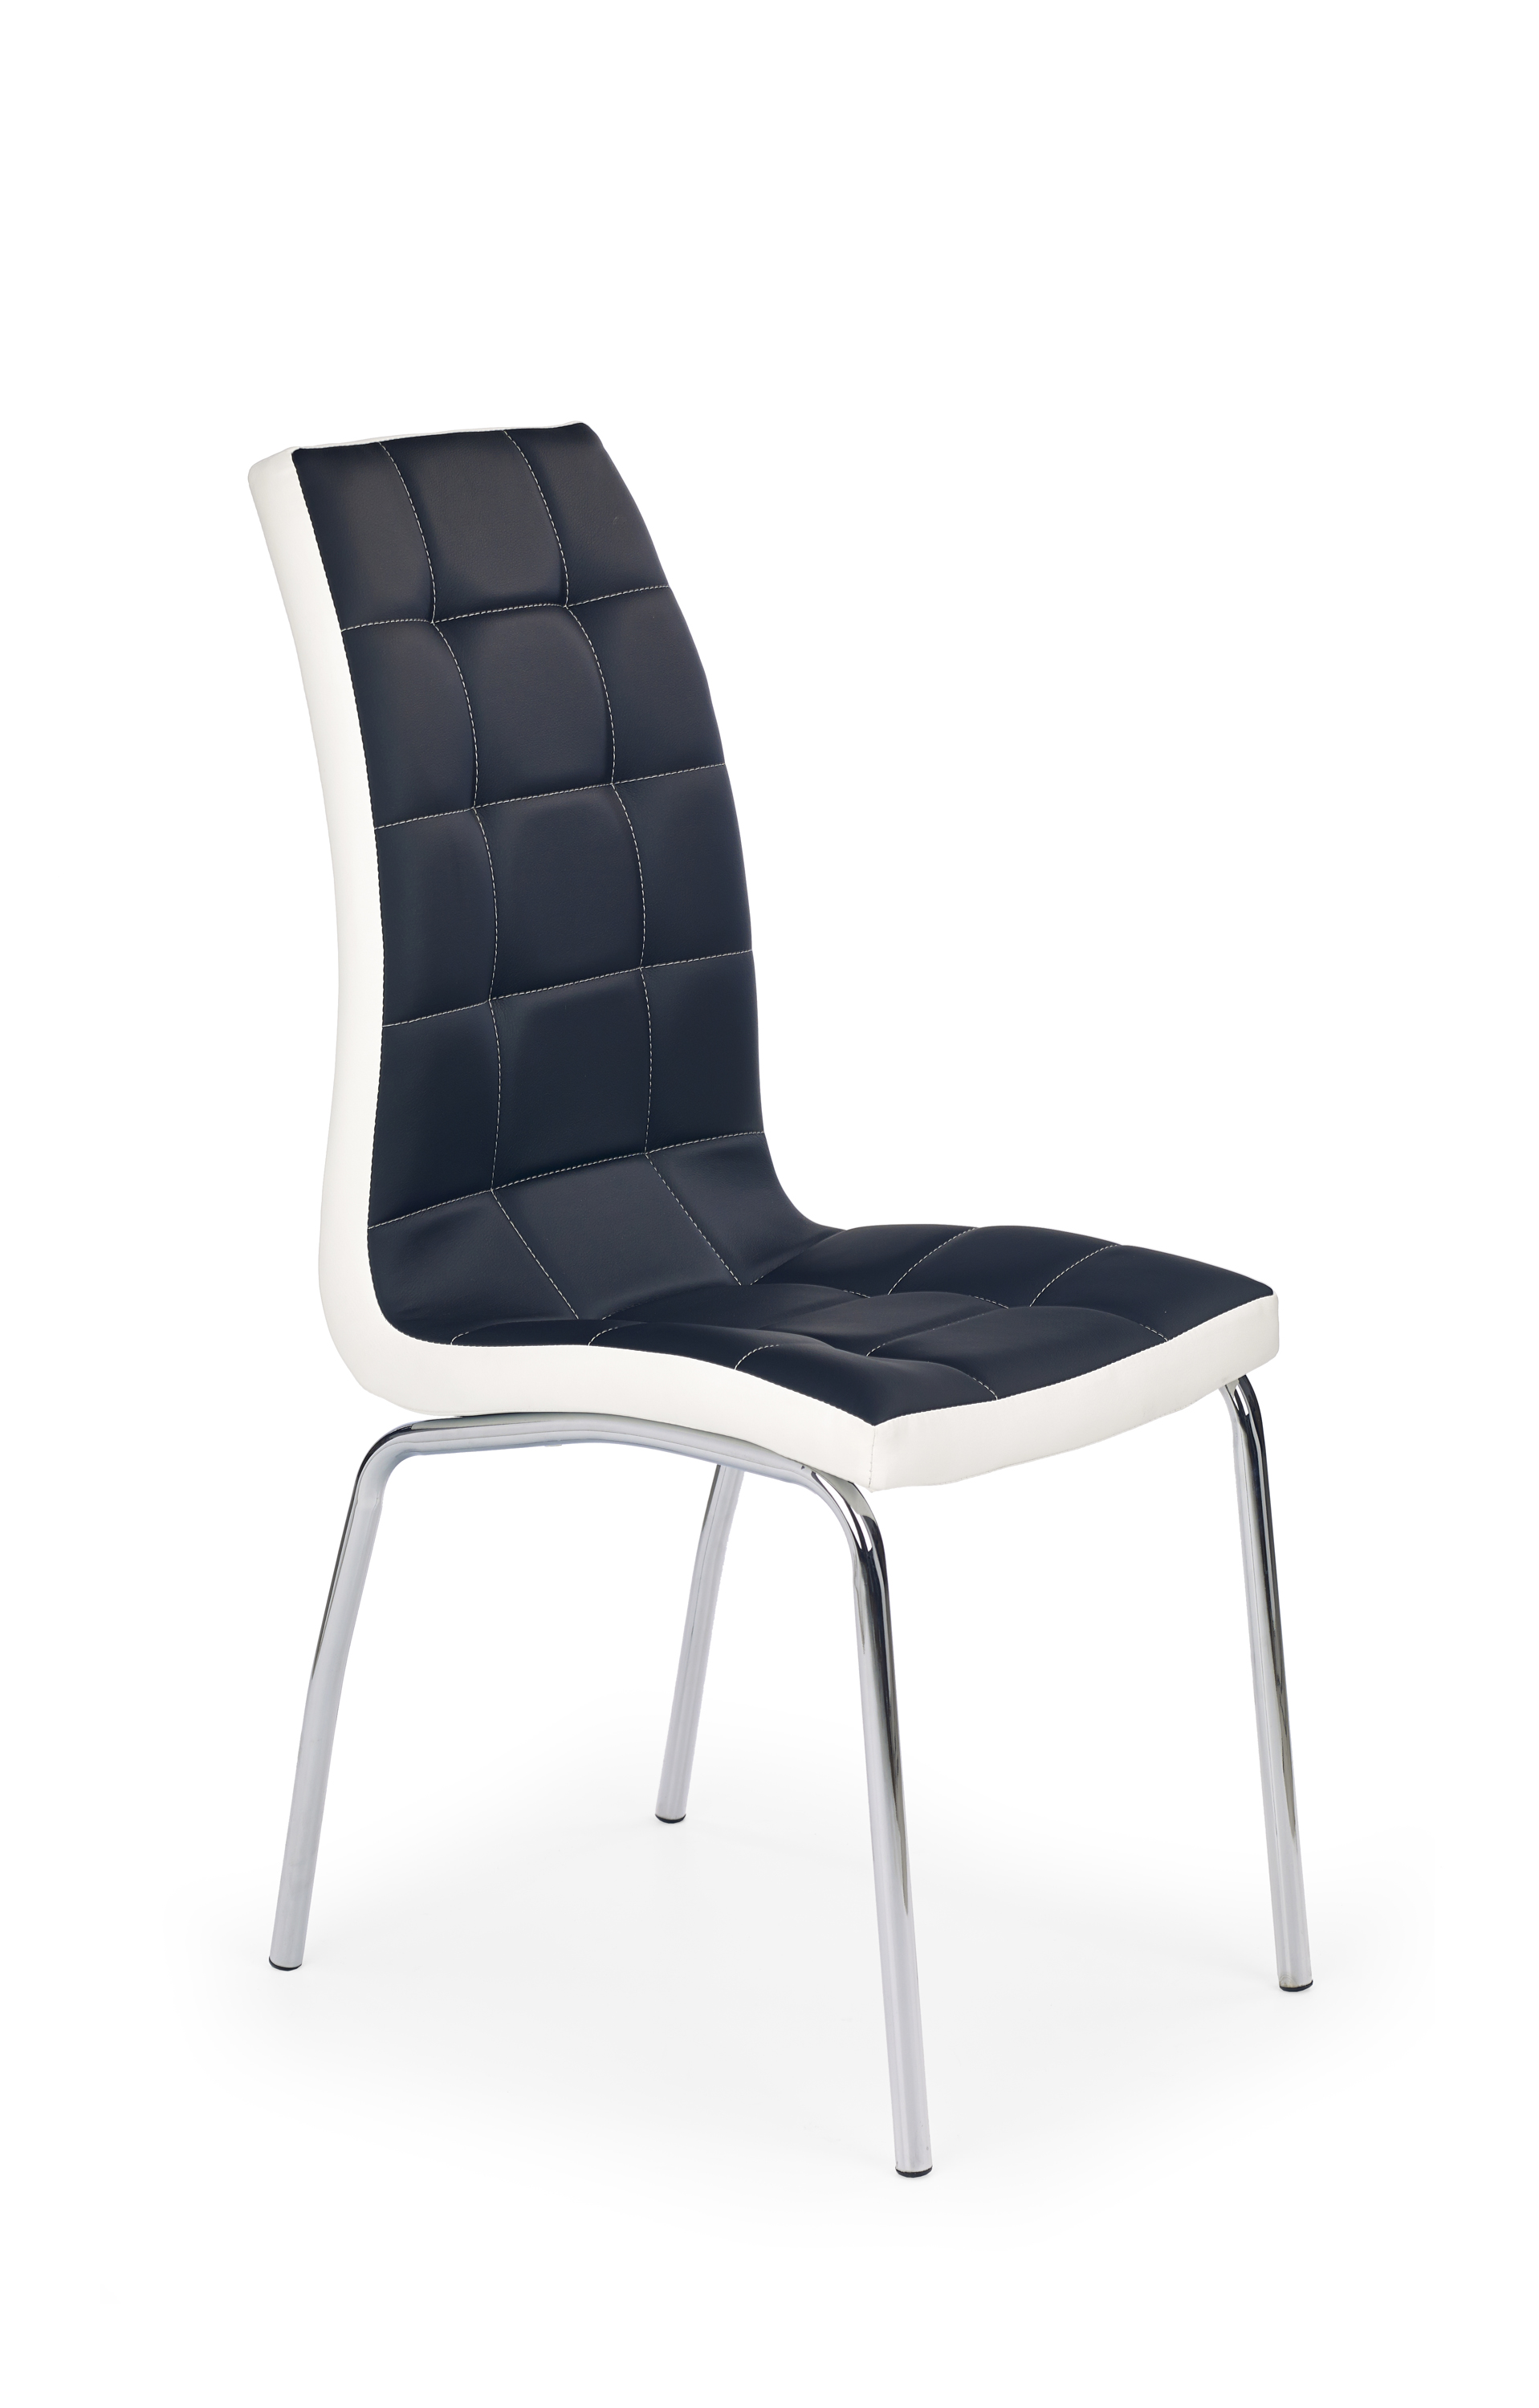 Židle K186 - Fekete / bílý Židle k186 - Fekete / bílý